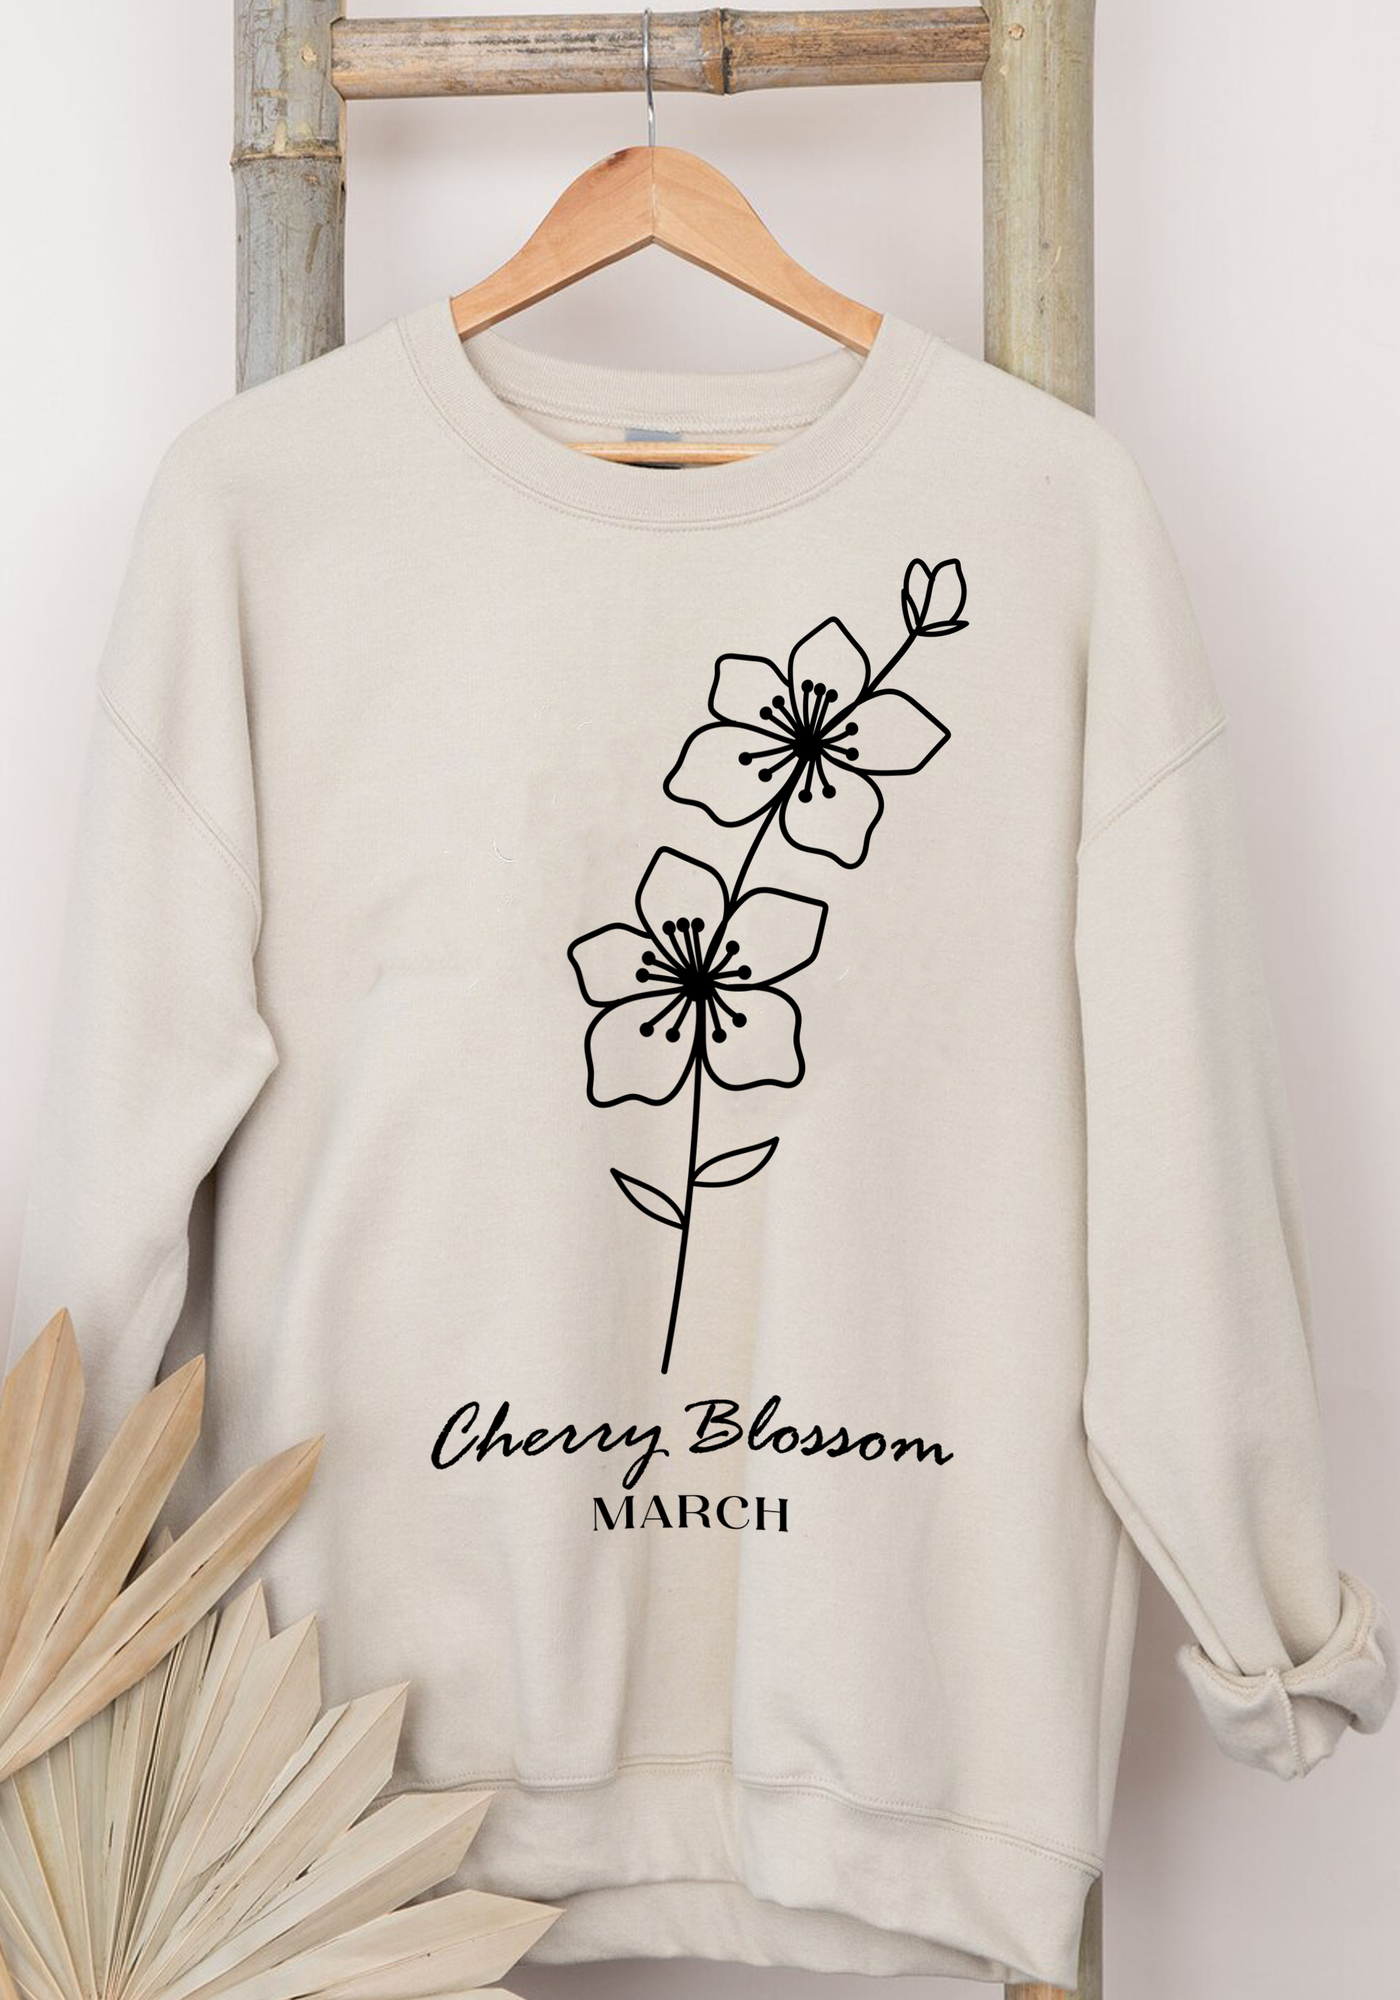 Birth Month March-Cherry Blossom Sweatshirt